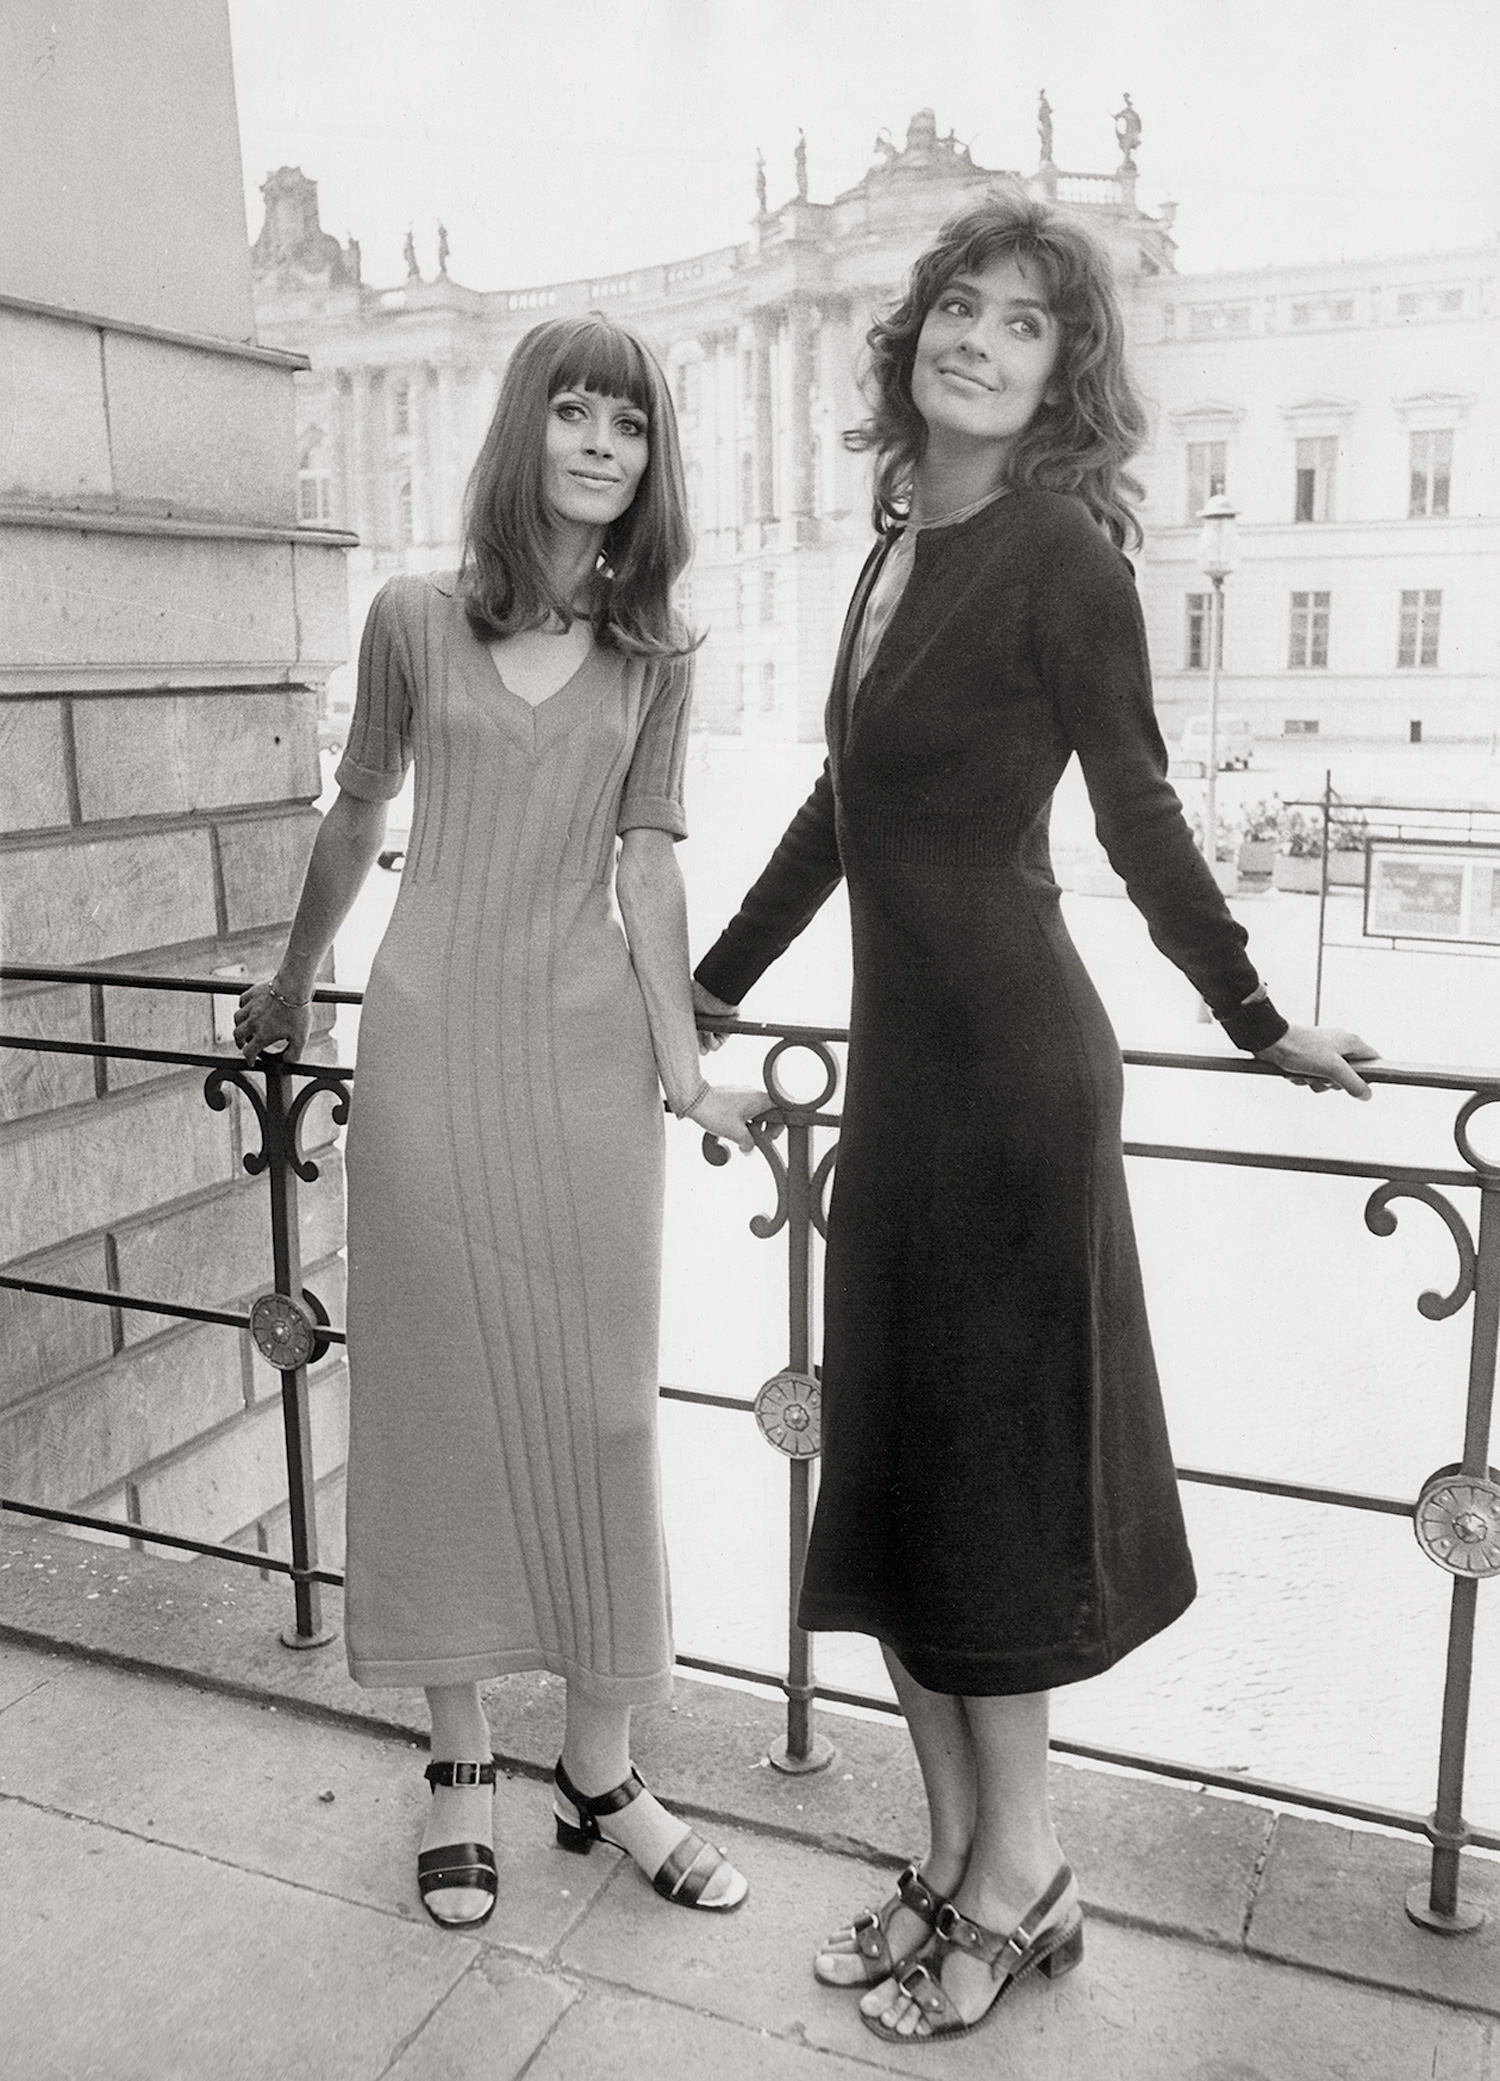 Fashion photos, Berlin by Arno Fischer, 1967